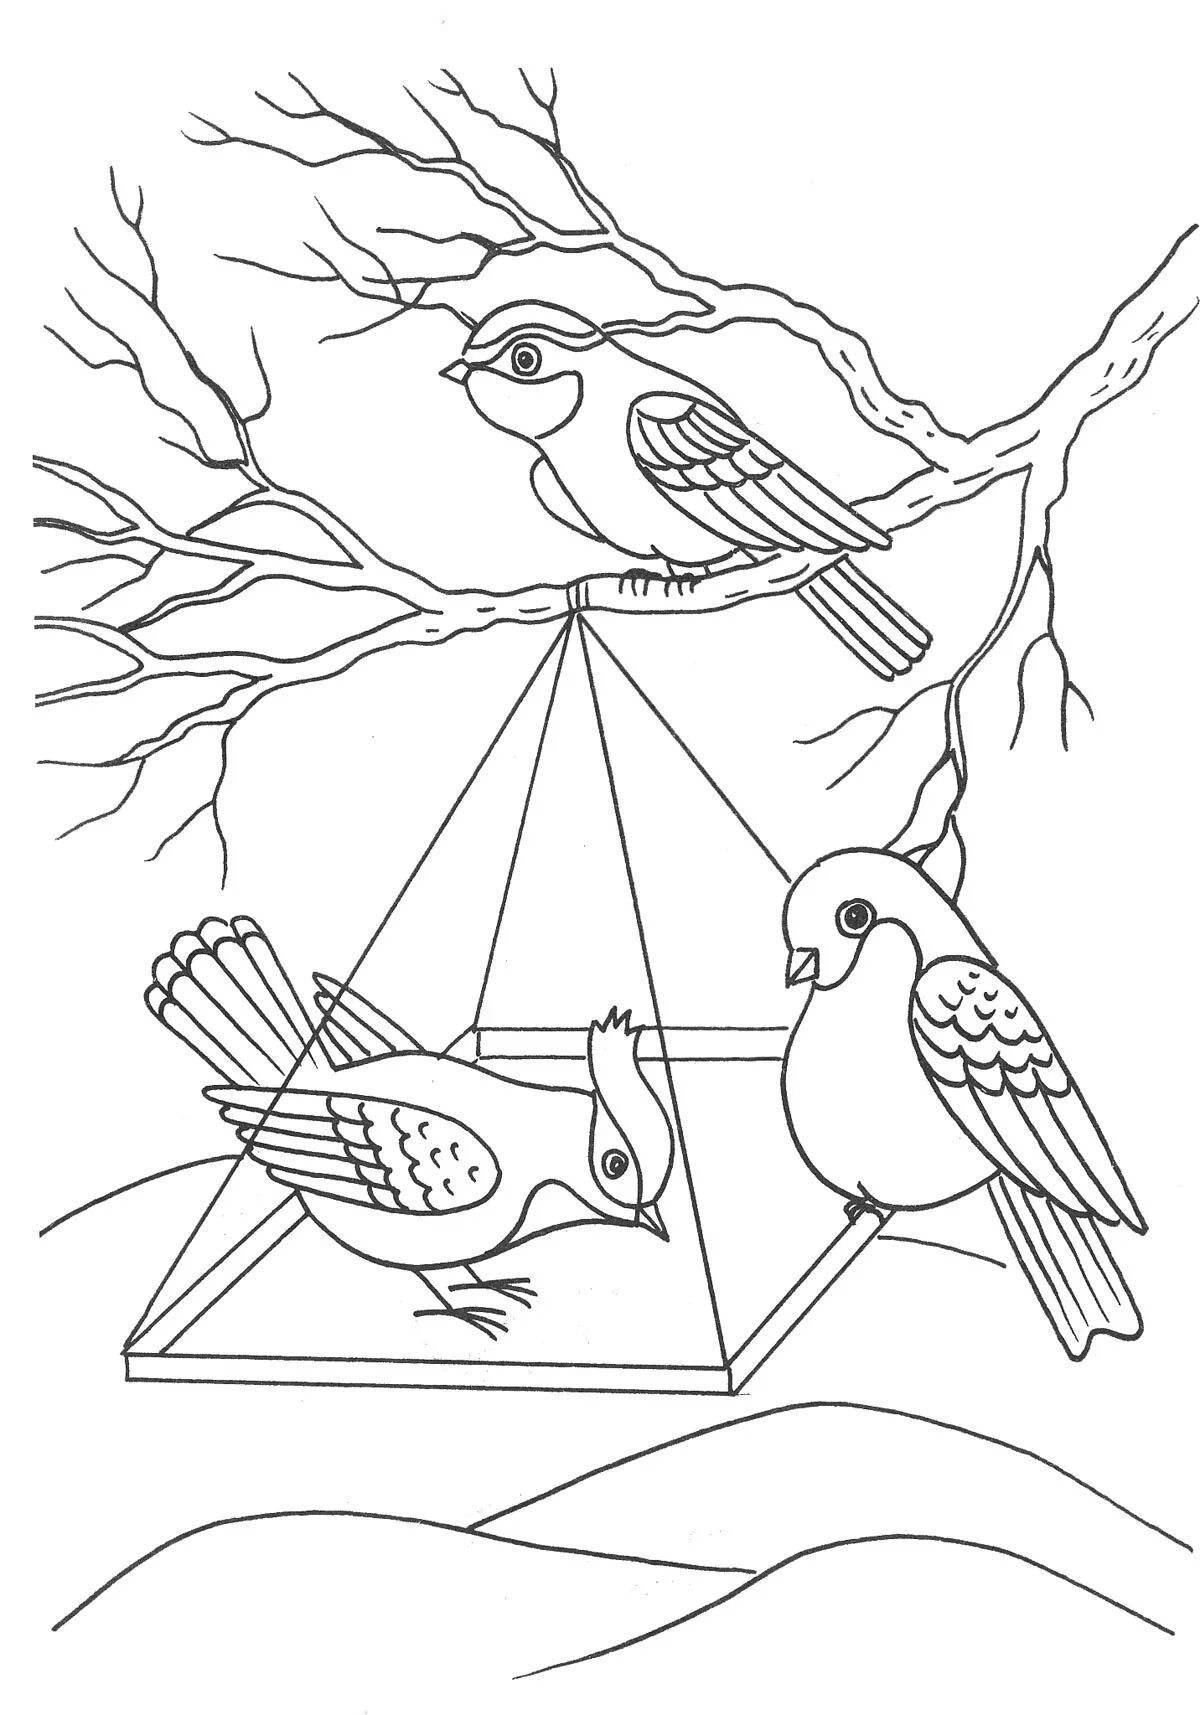 Утешительная раскраска: как помочь птицам зимой